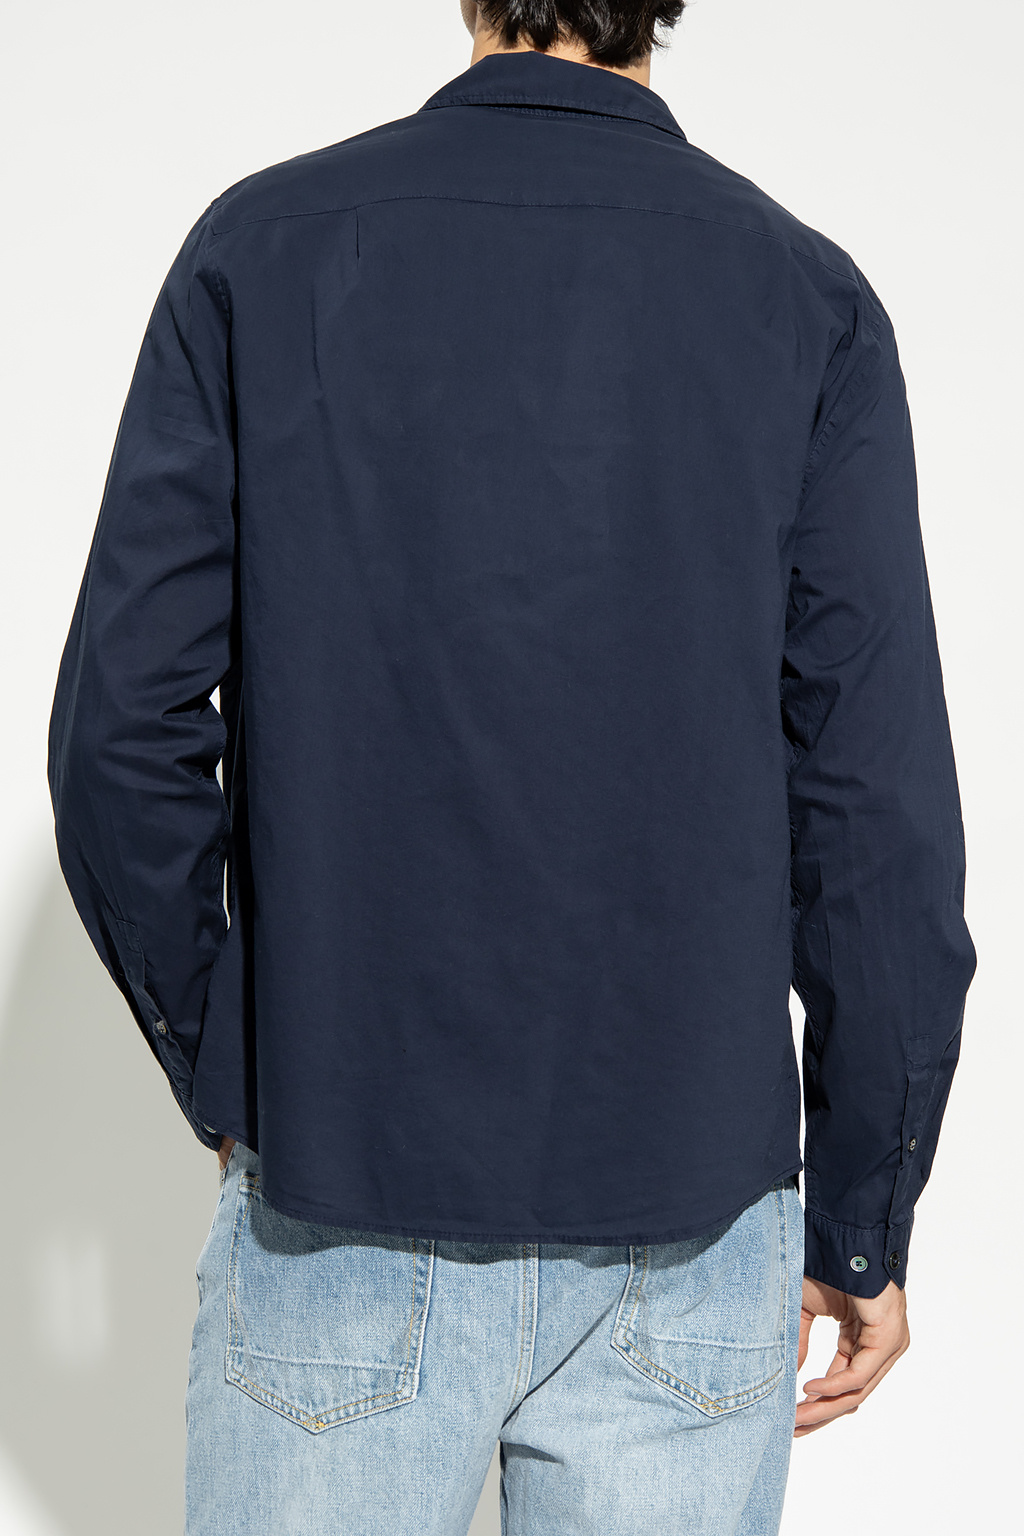 New Era Essentials T-Shirt in Schwarz mit Schriftzug ‘Thibaut’ shirt